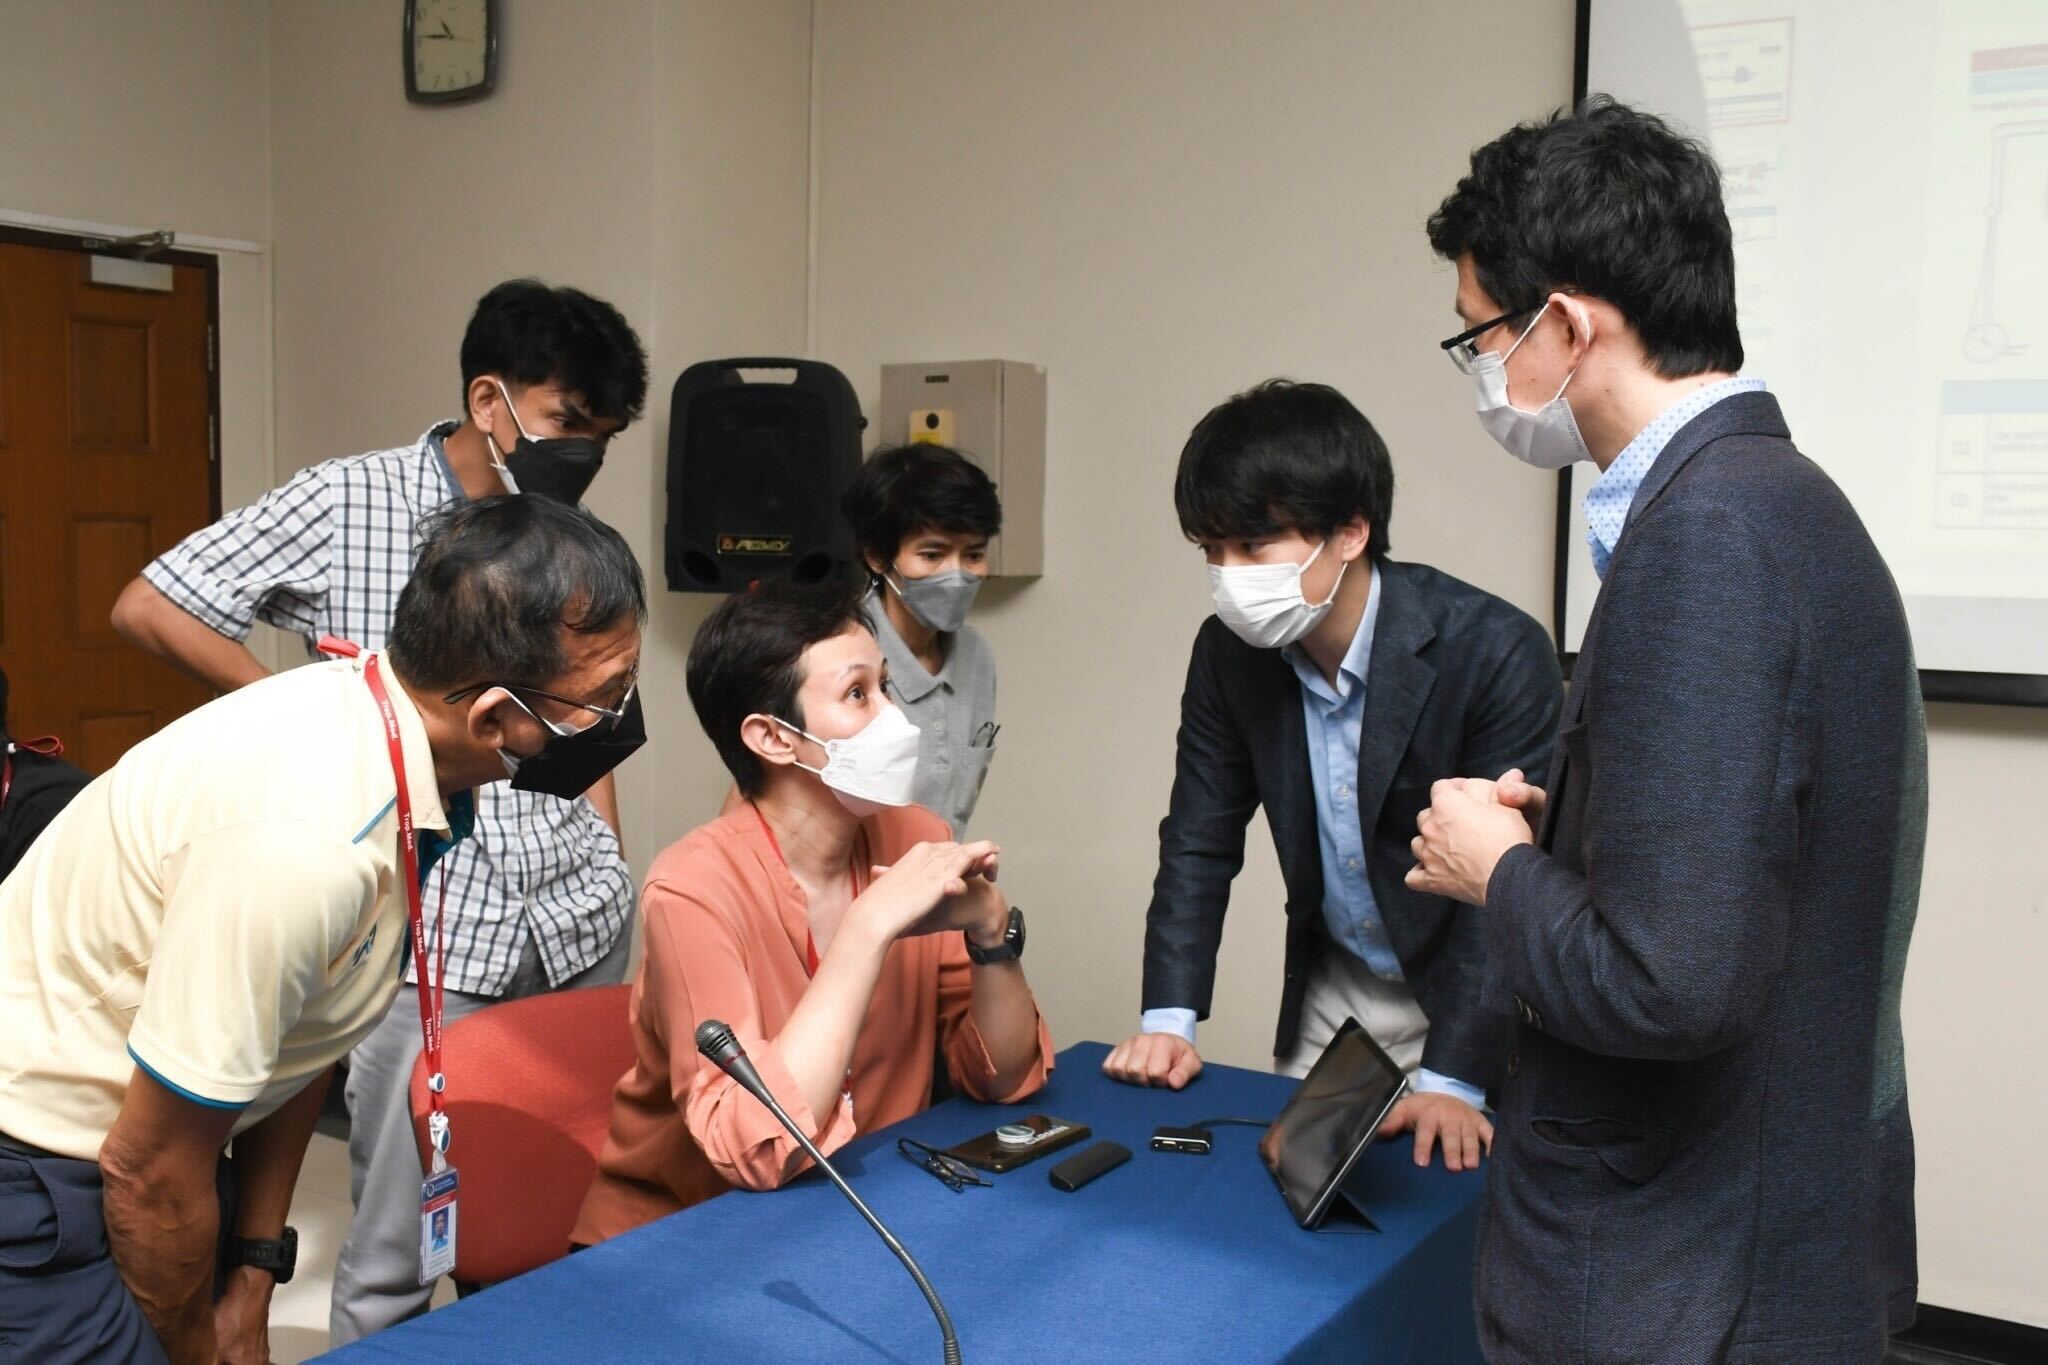 日本経済新聞にて、ジョリーグッドの医療VRがタイ王国トップのマヒドン大学に正式導入されたことについて紹介されました